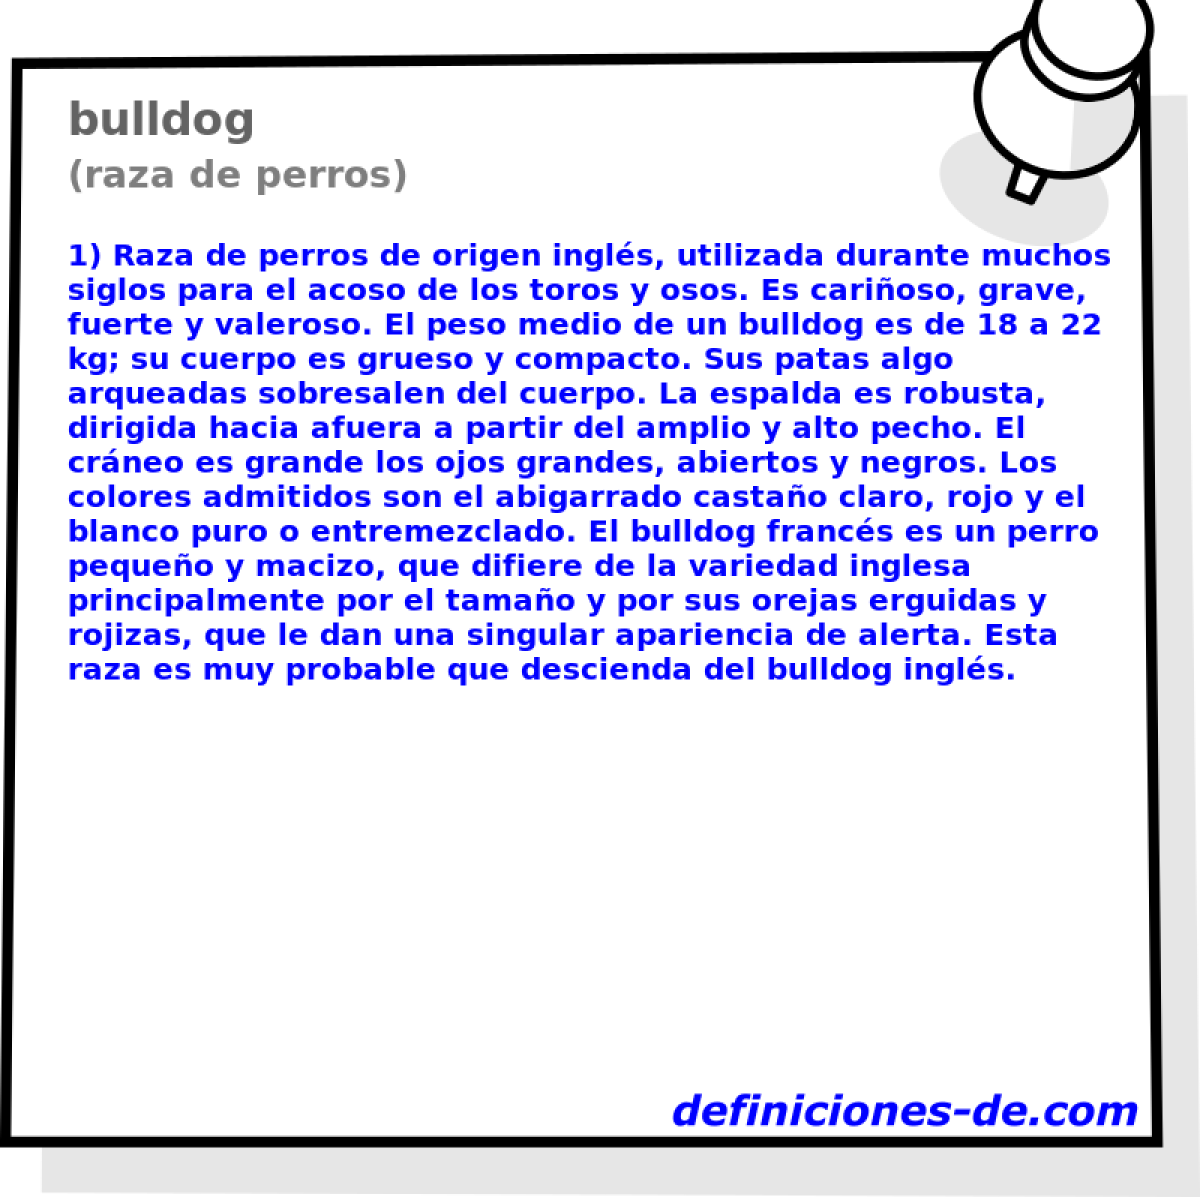 bulldog (raza de perros)